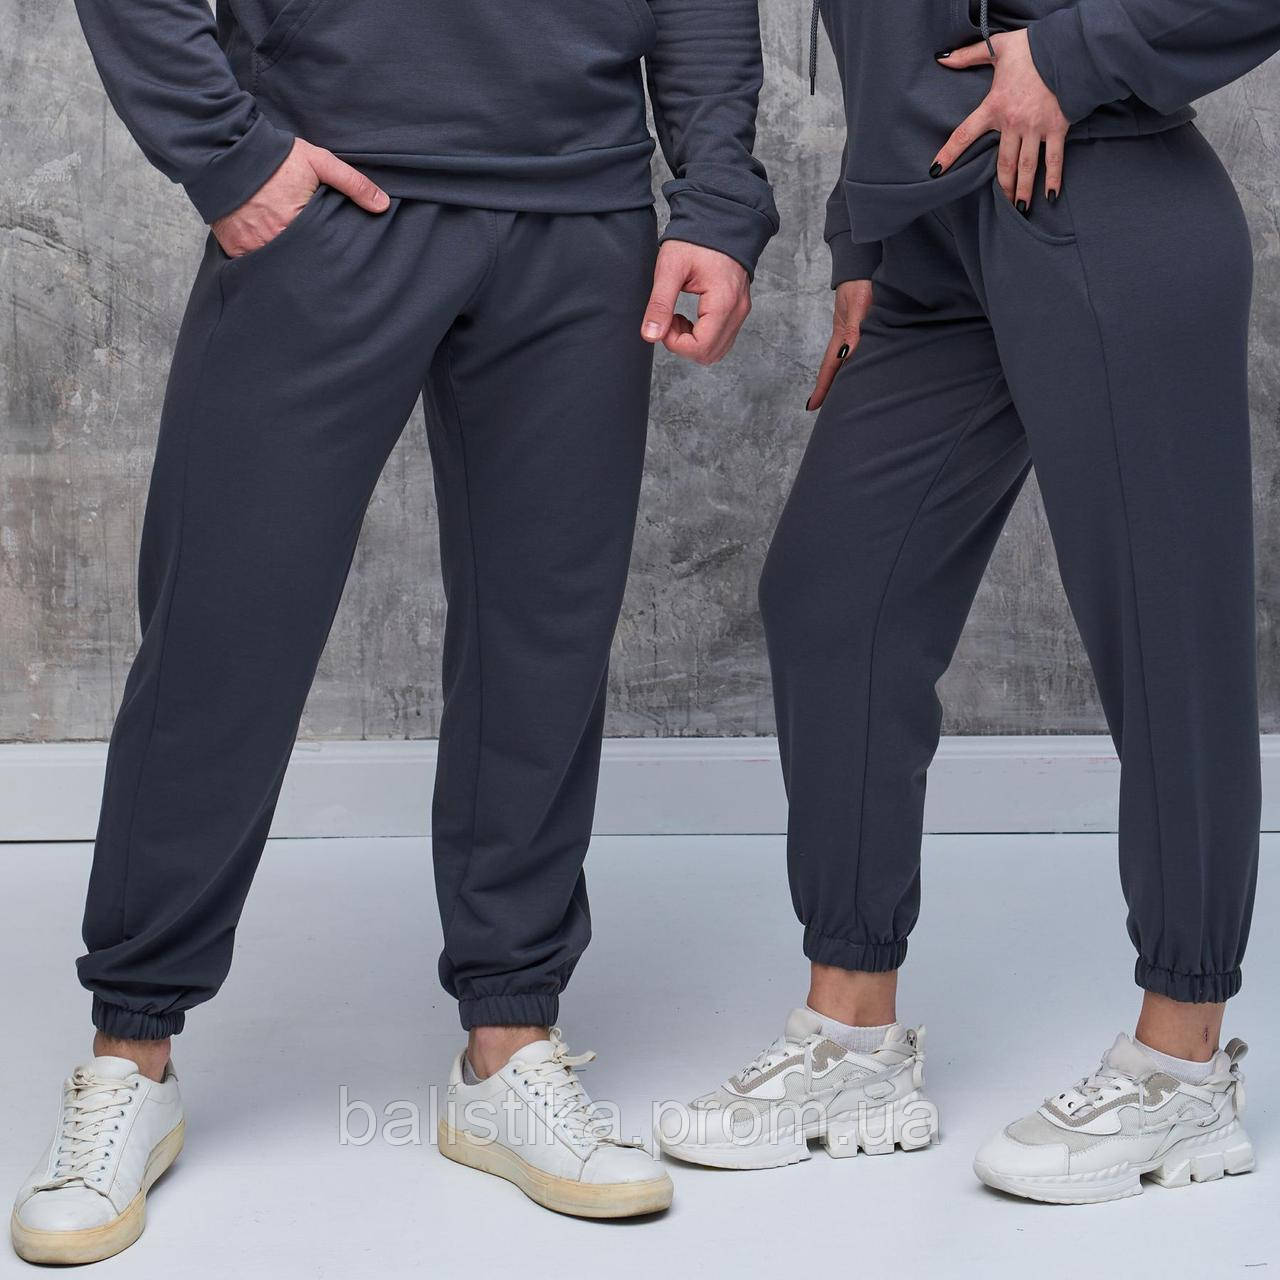 Спортивні сірі штани Heicone Grey,демісезонні легкі базові штани для спорту чоловічі та жіночі унісекс